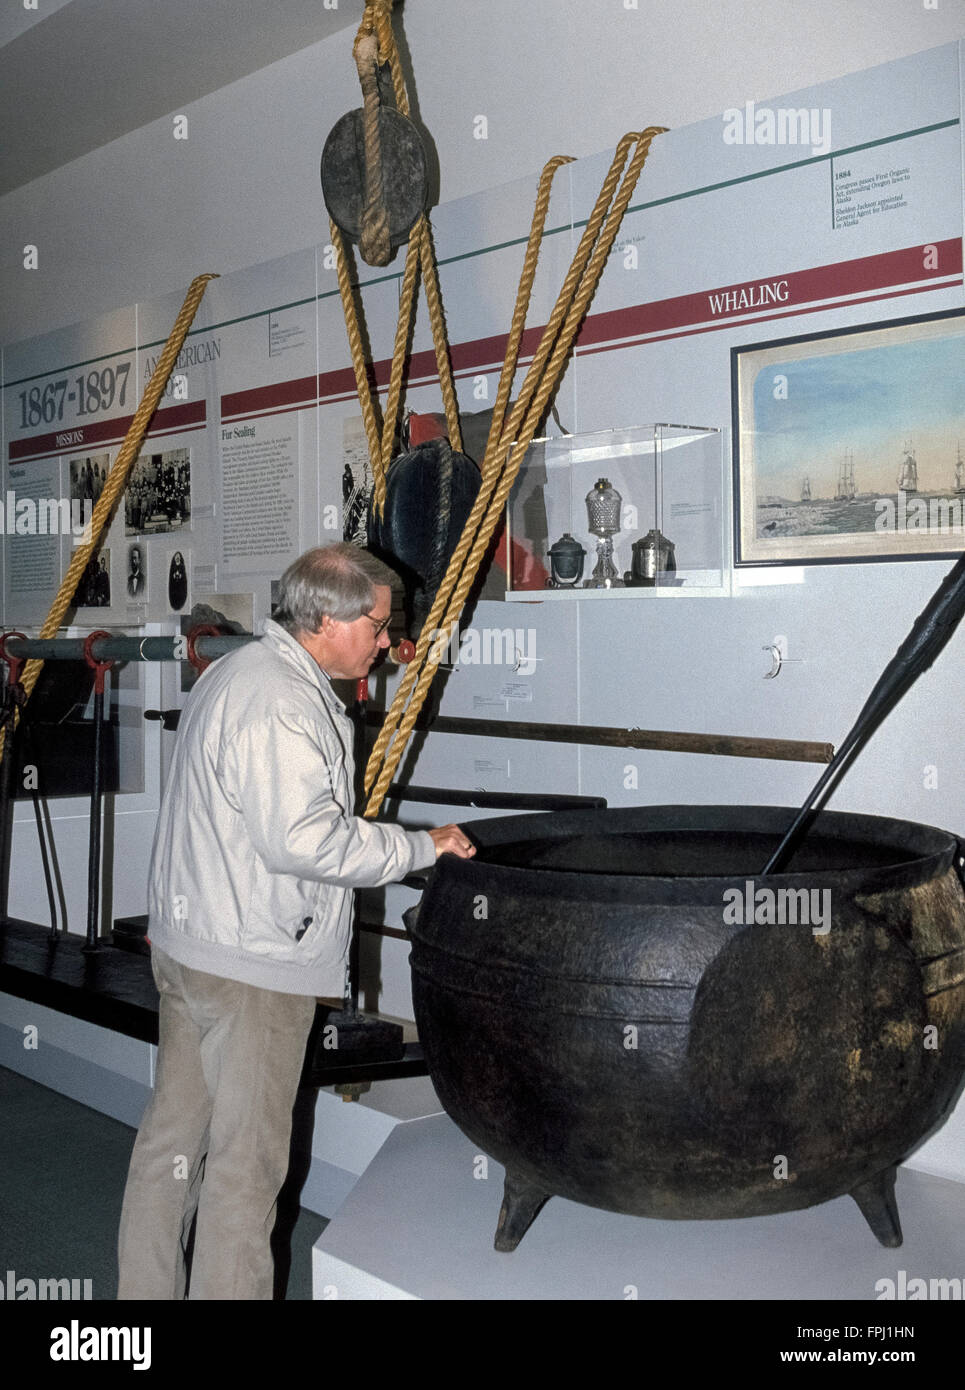 Eine riesige versuchen Eisentopf wo Walspeck für sein Öl an Bord Walfang-Schiffe gekocht wurde erscheint in der Walfang-Ausstellung im Musée Anchorage, welche Funktionen Alaskan Geschichte, Kunst und Wissenschaft in Anchorage, Alaska, USA. -Modell veröffentlicht. Stockfoto